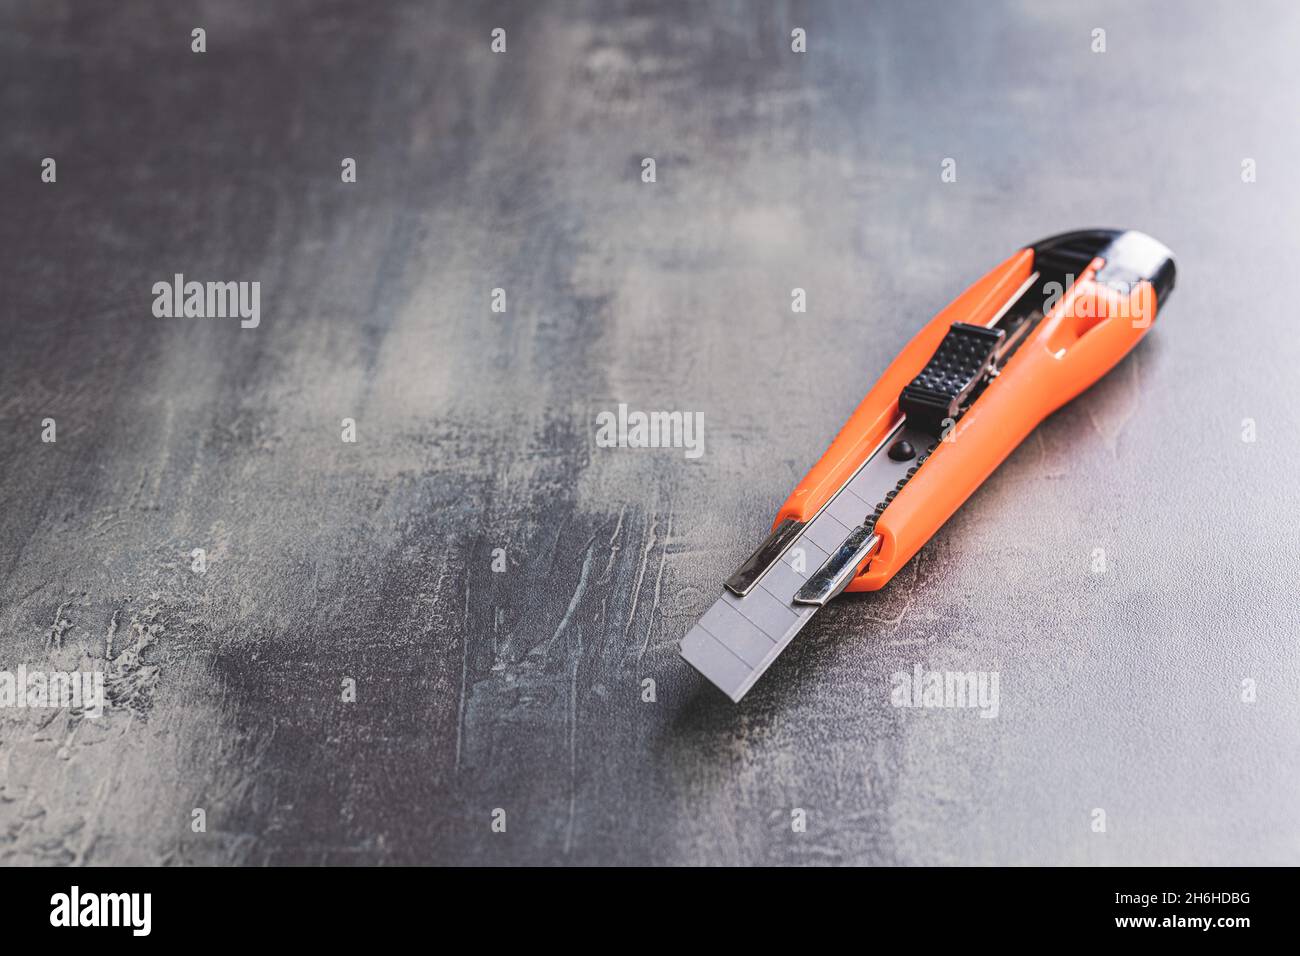 Couteau universel en plastique orange sur la table. Banque D'Images